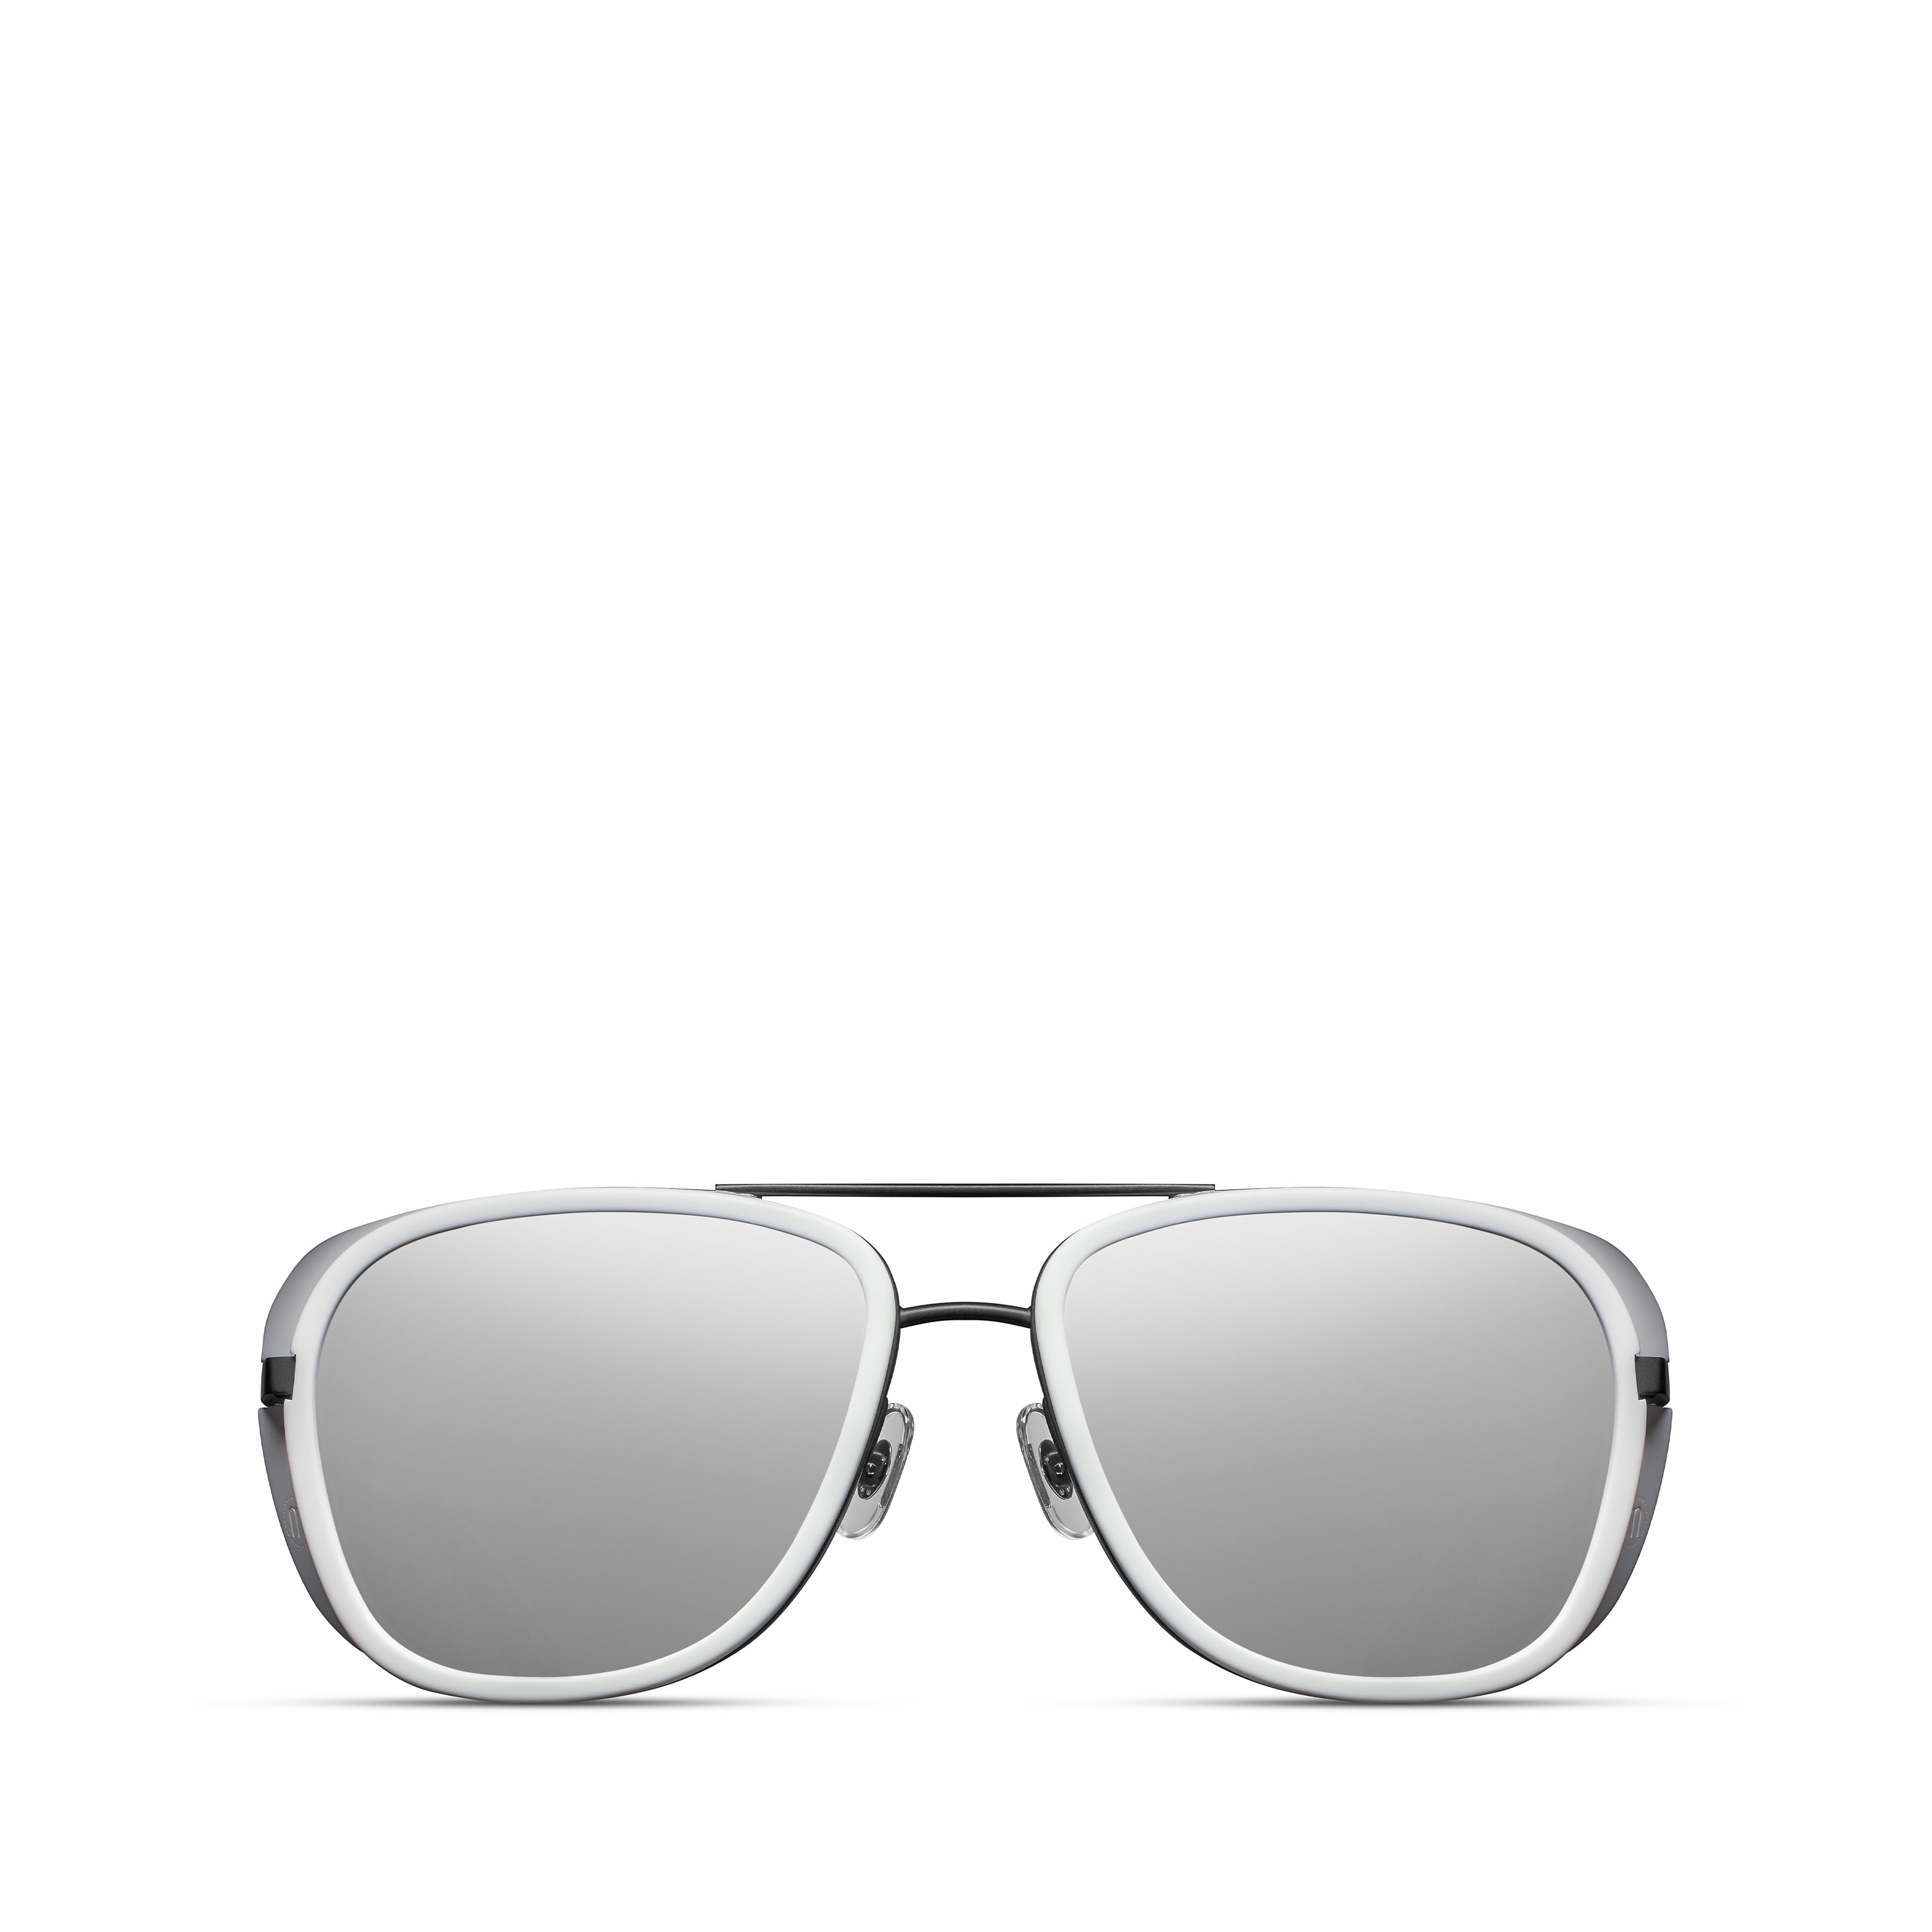 Matsuda - M3023 Silver Mirror Sunglasses - (Black/White) – DSMNY E-SHOP